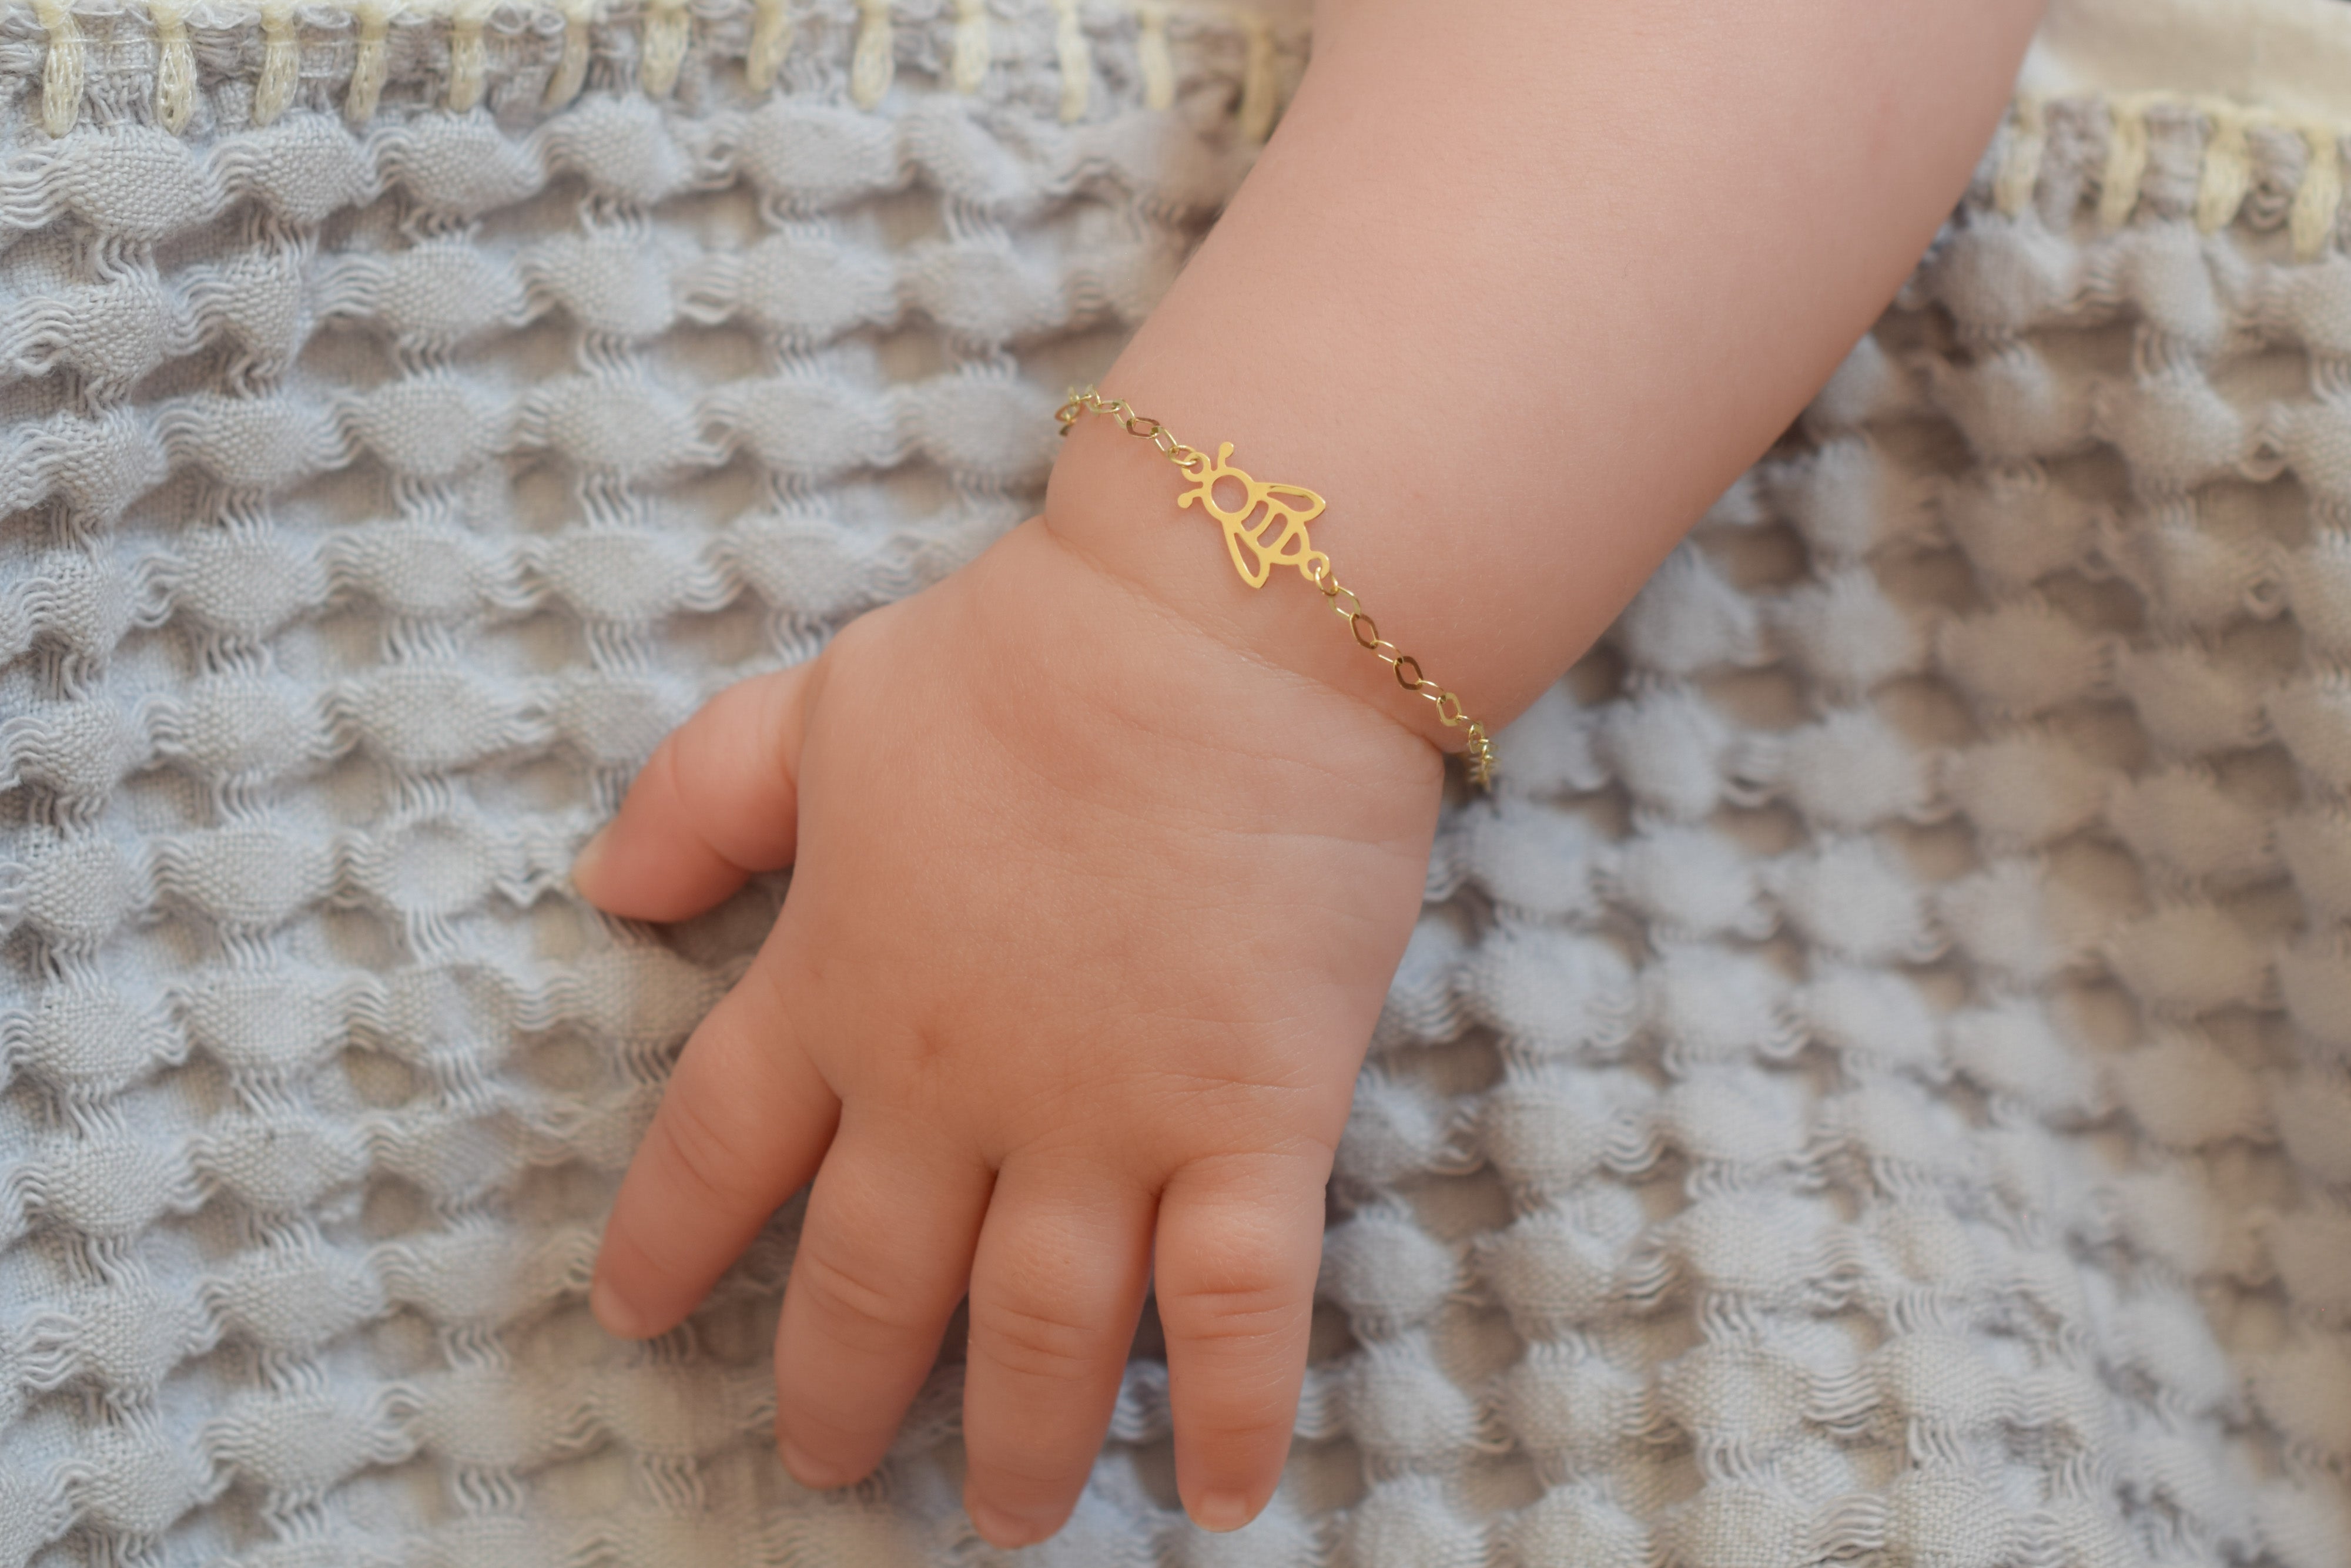 omvatten Chaise longue Symptomen BeMy Gold 14k Bijtje Baby/Kinder Armband – BeMy Jewels